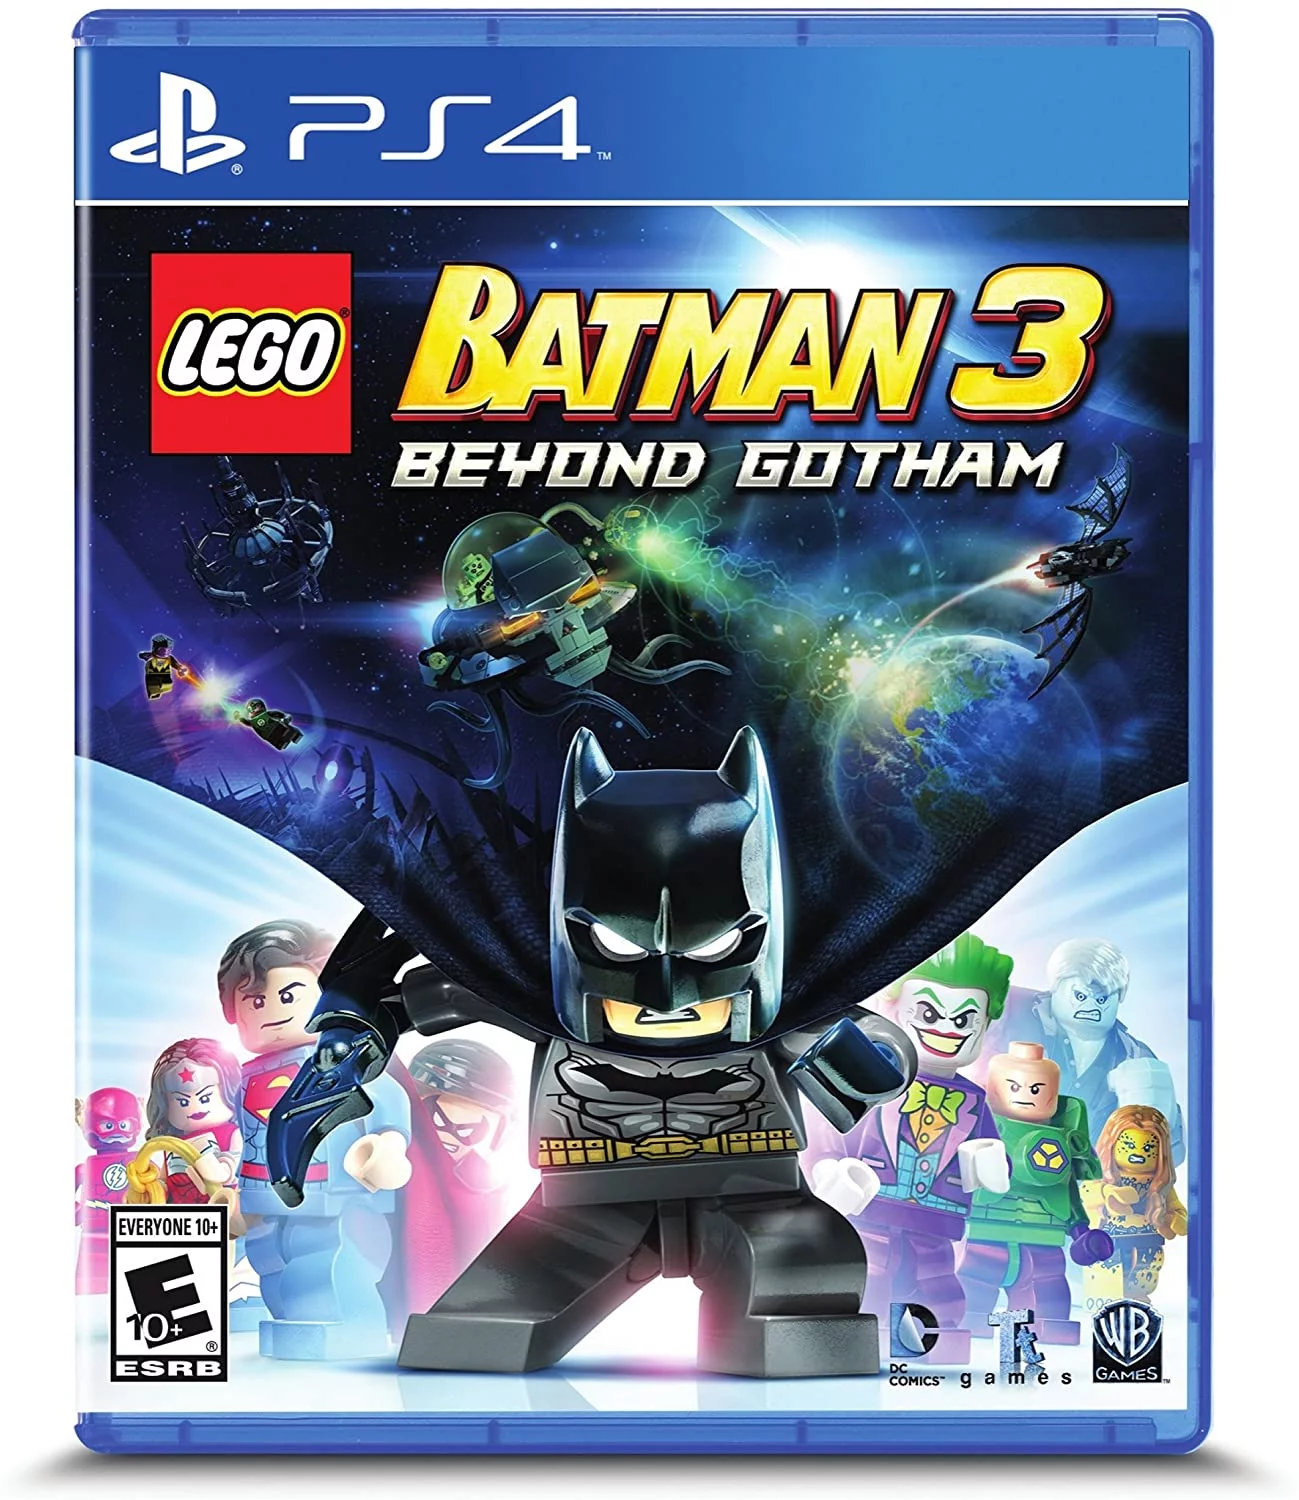 LEGO Batman 3: Beyond Gotham, Warner Bros, PlayStation 4, 883929427406